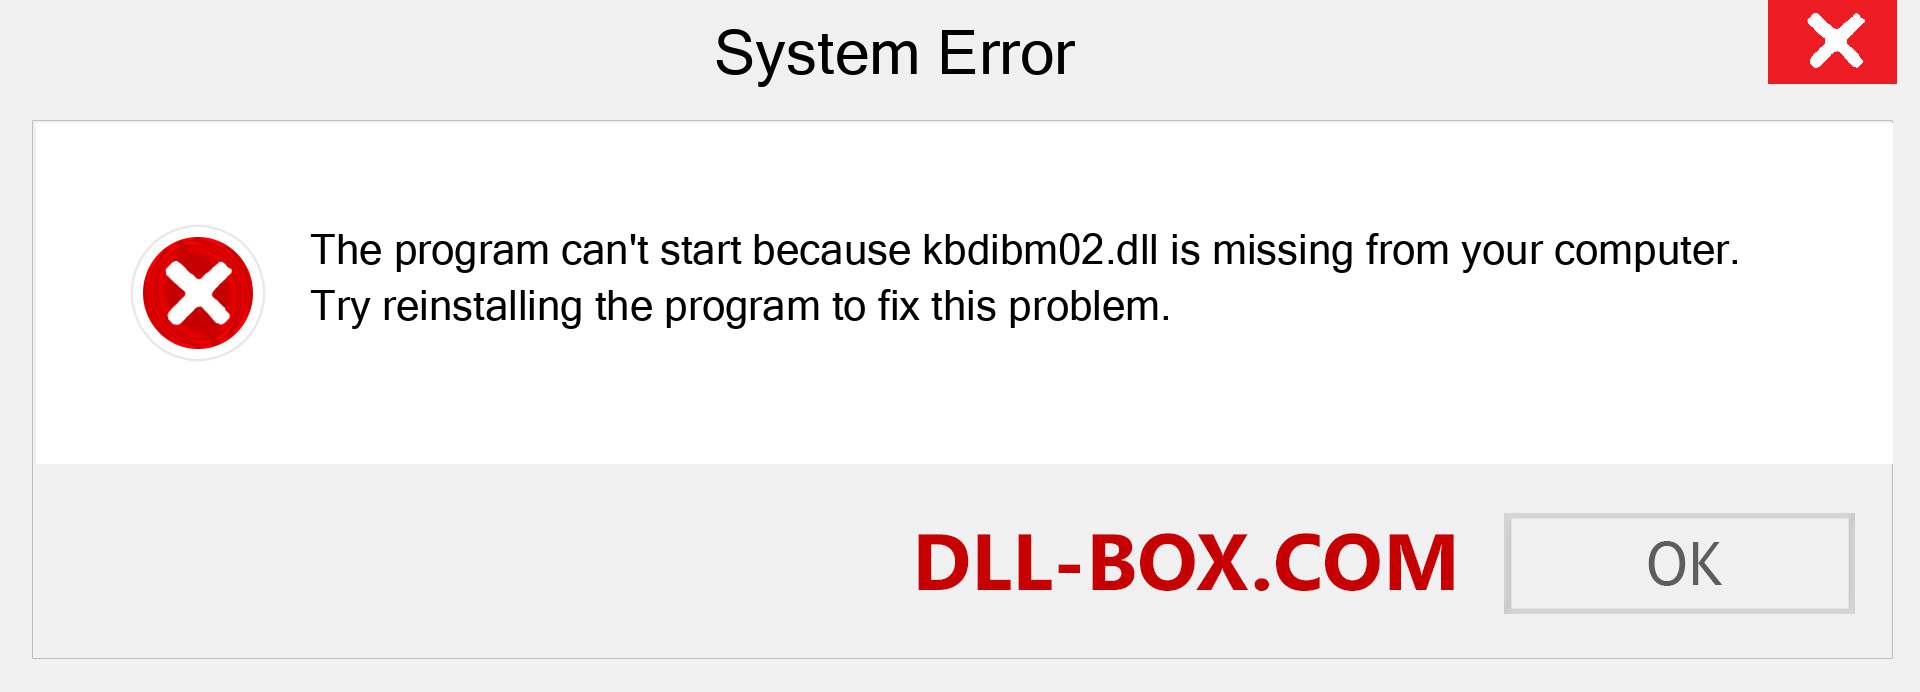  kbdibm02.dll file is missing?. Download for Windows 7, 8, 10 - Fix  kbdibm02 dll Missing Error on Windows, photos, images